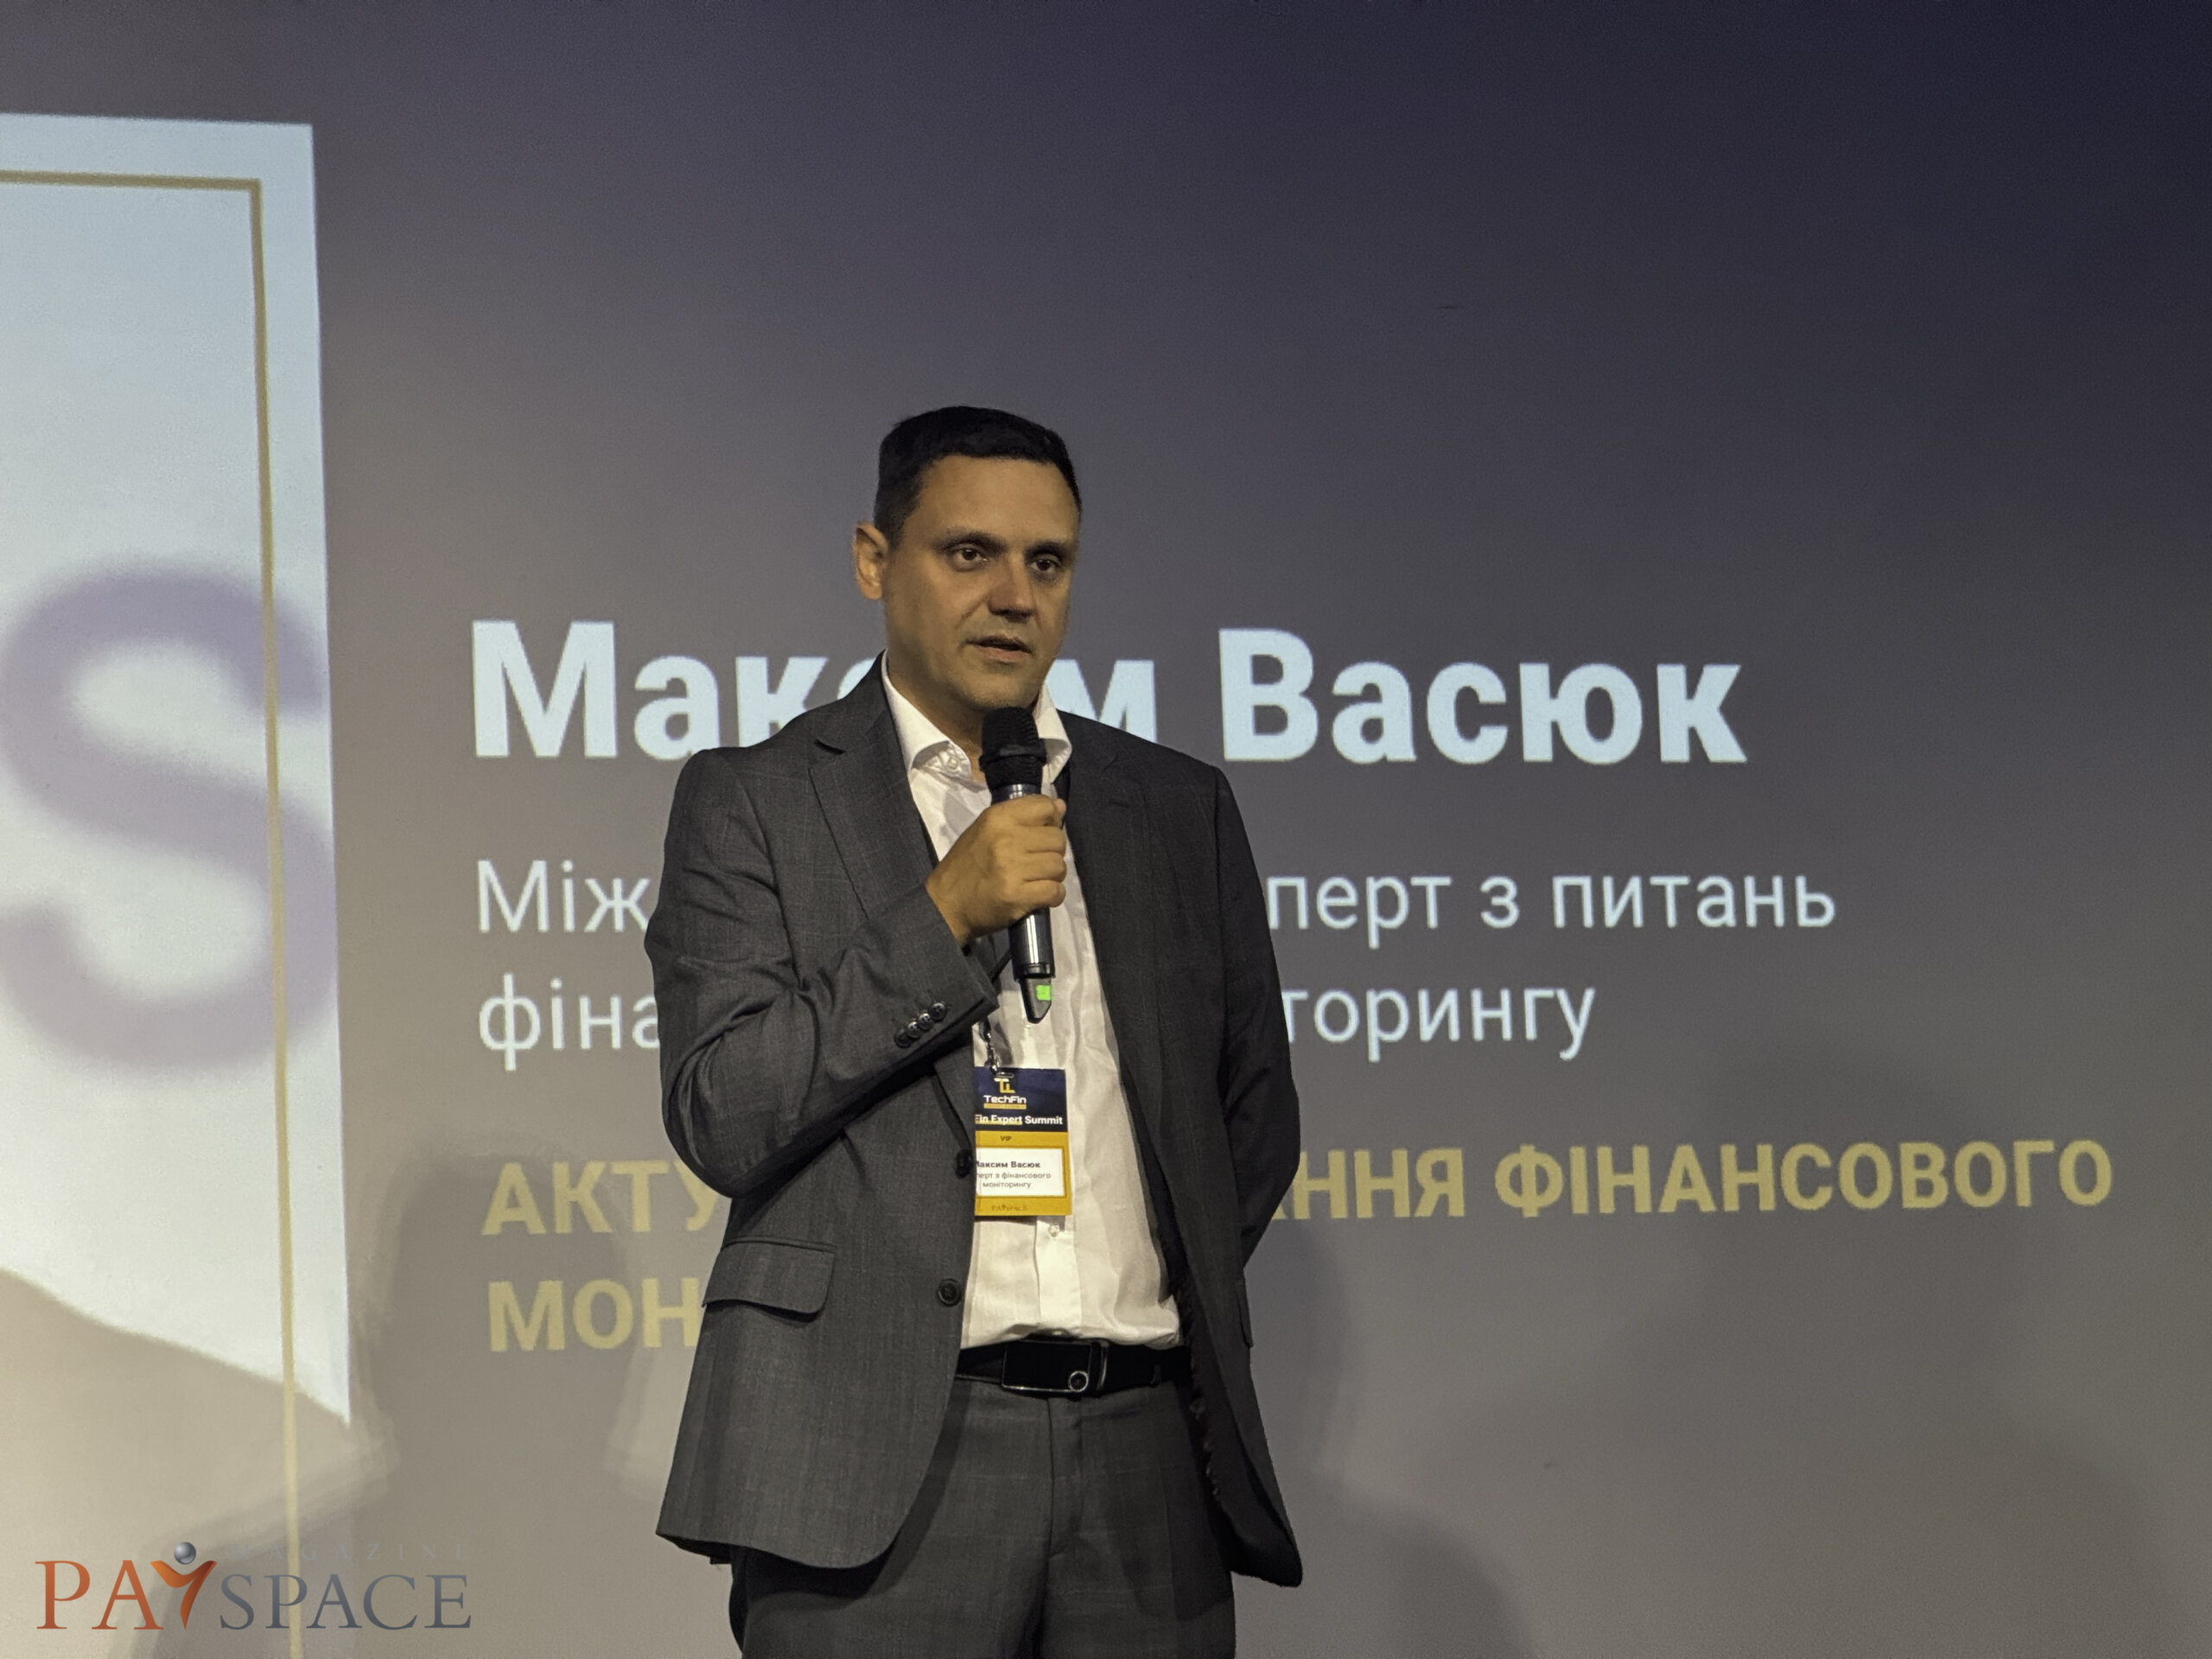 международный эксперт Максим Васюк